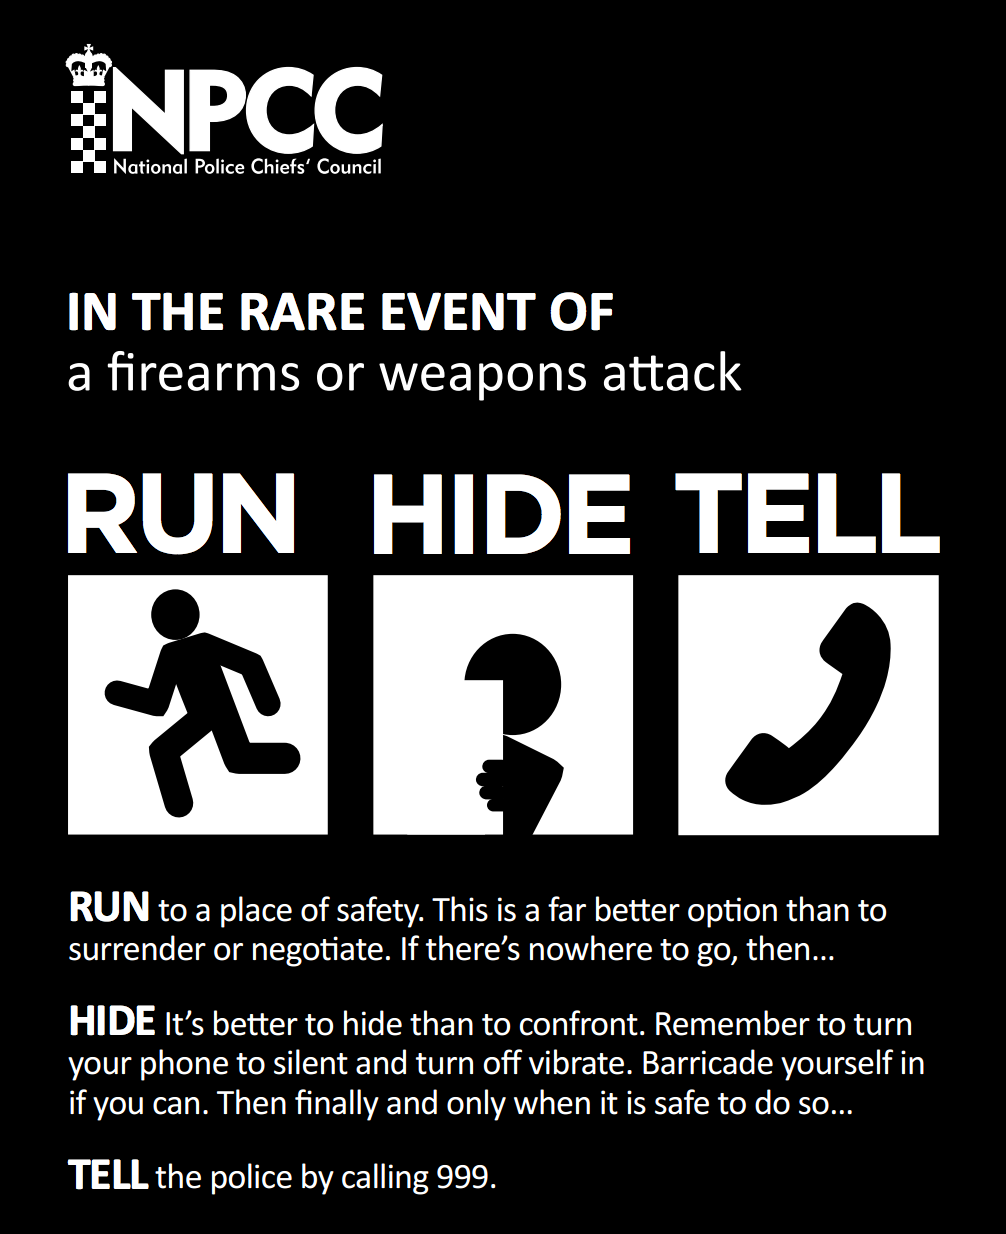 NPCC - Run Hide Tell campaign